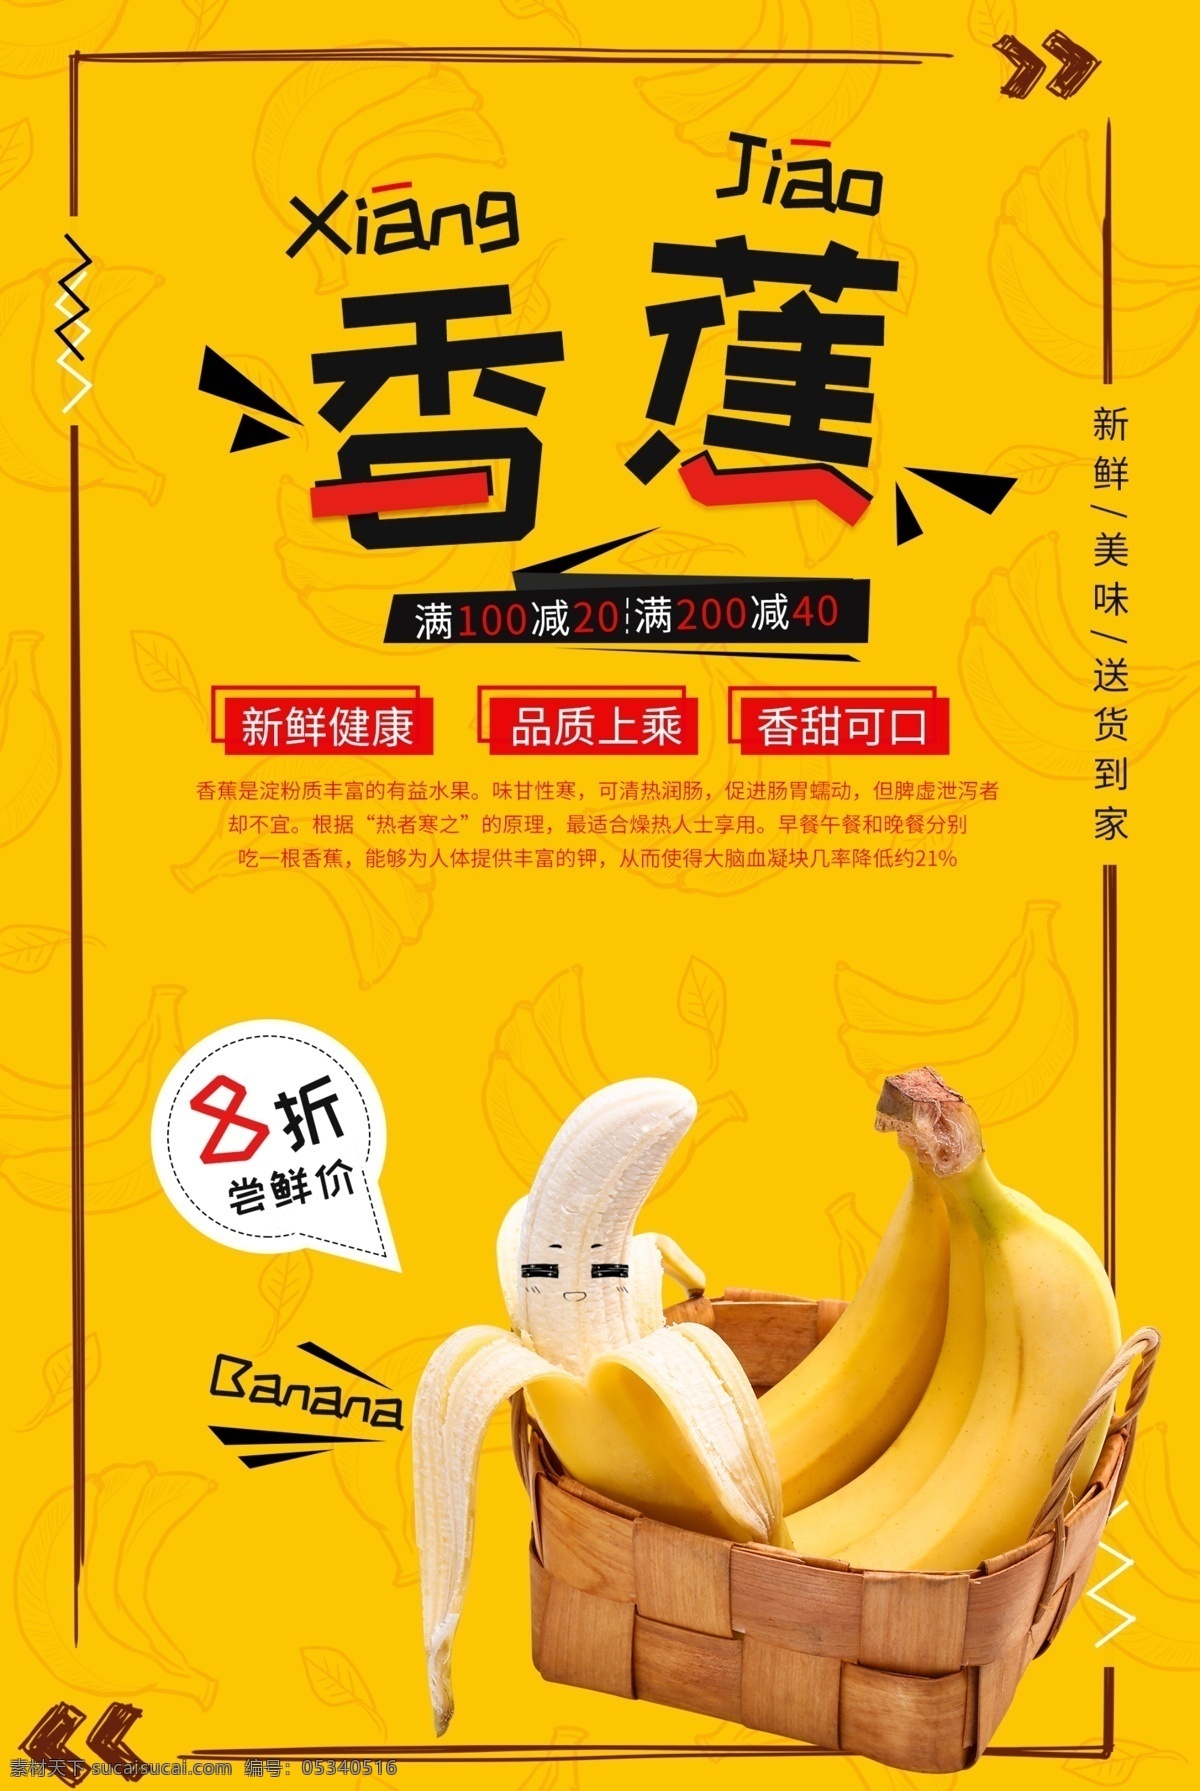 香蕉 水果 促销活动 宣传海报 促销 活动 宣传 海报 饮料 饮品 甜品 类